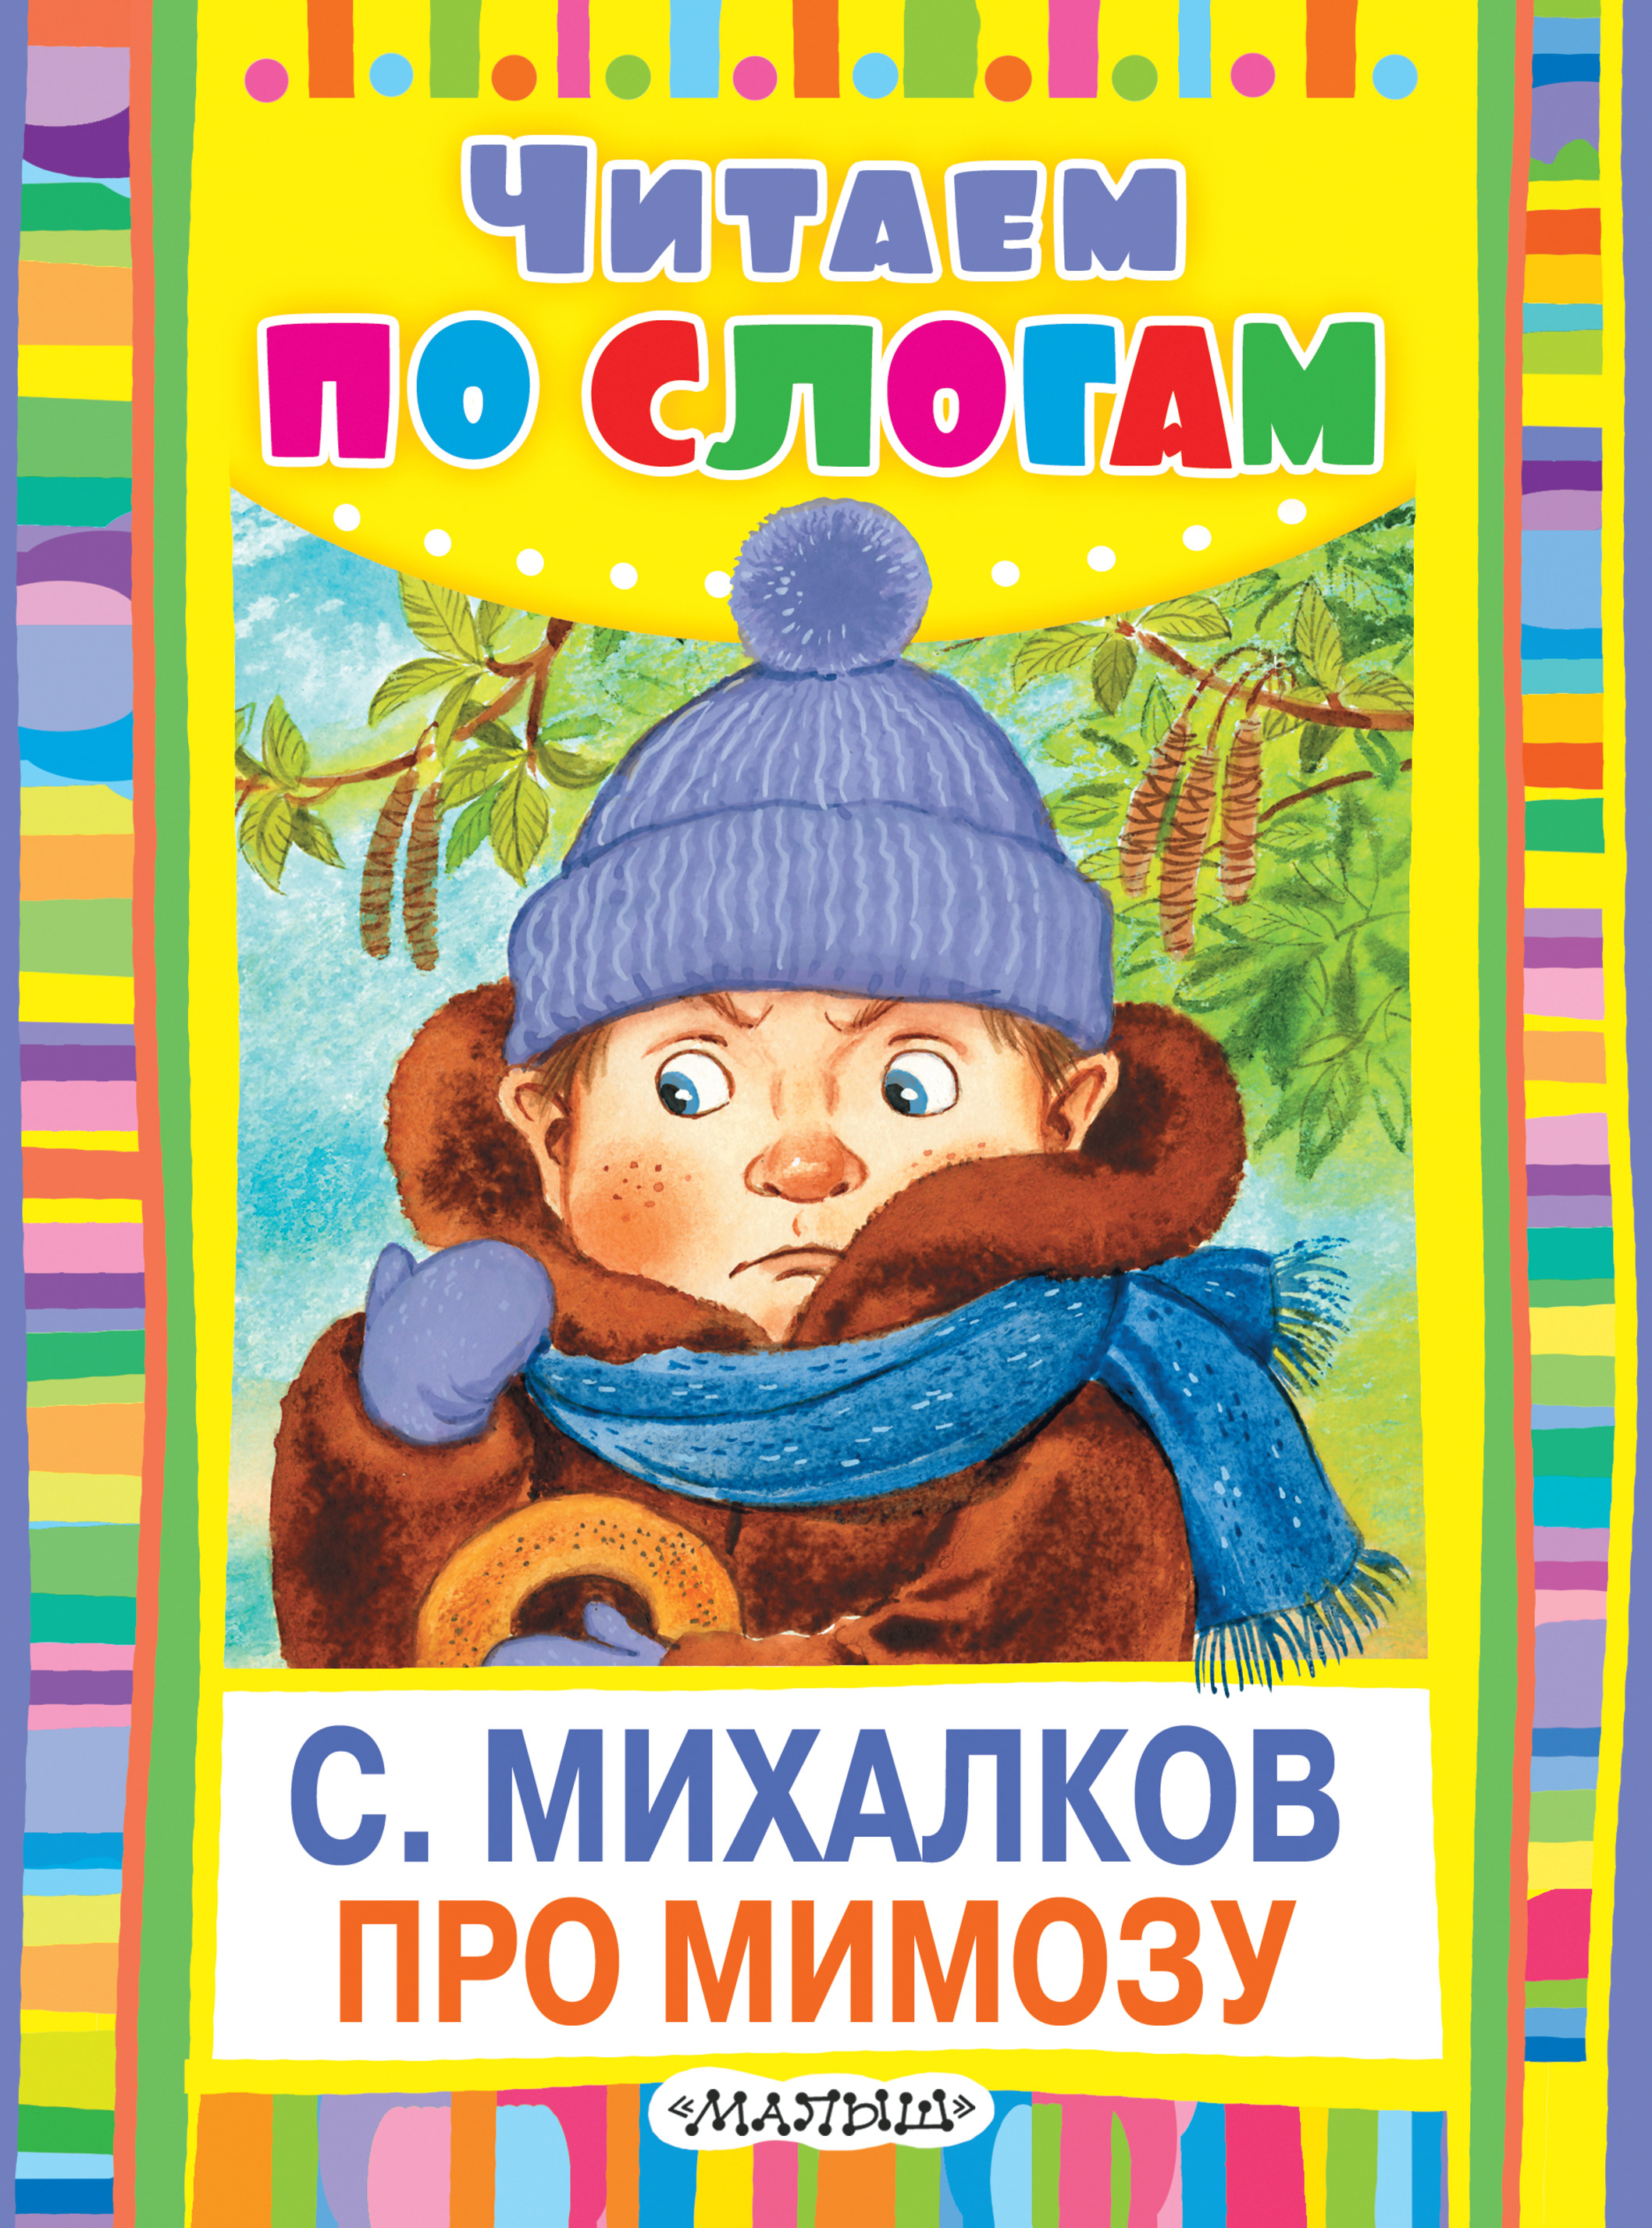 Про мимозу читать. Про мимозу Михалков книга. Обложки книг Сергея Михалкова для детей.